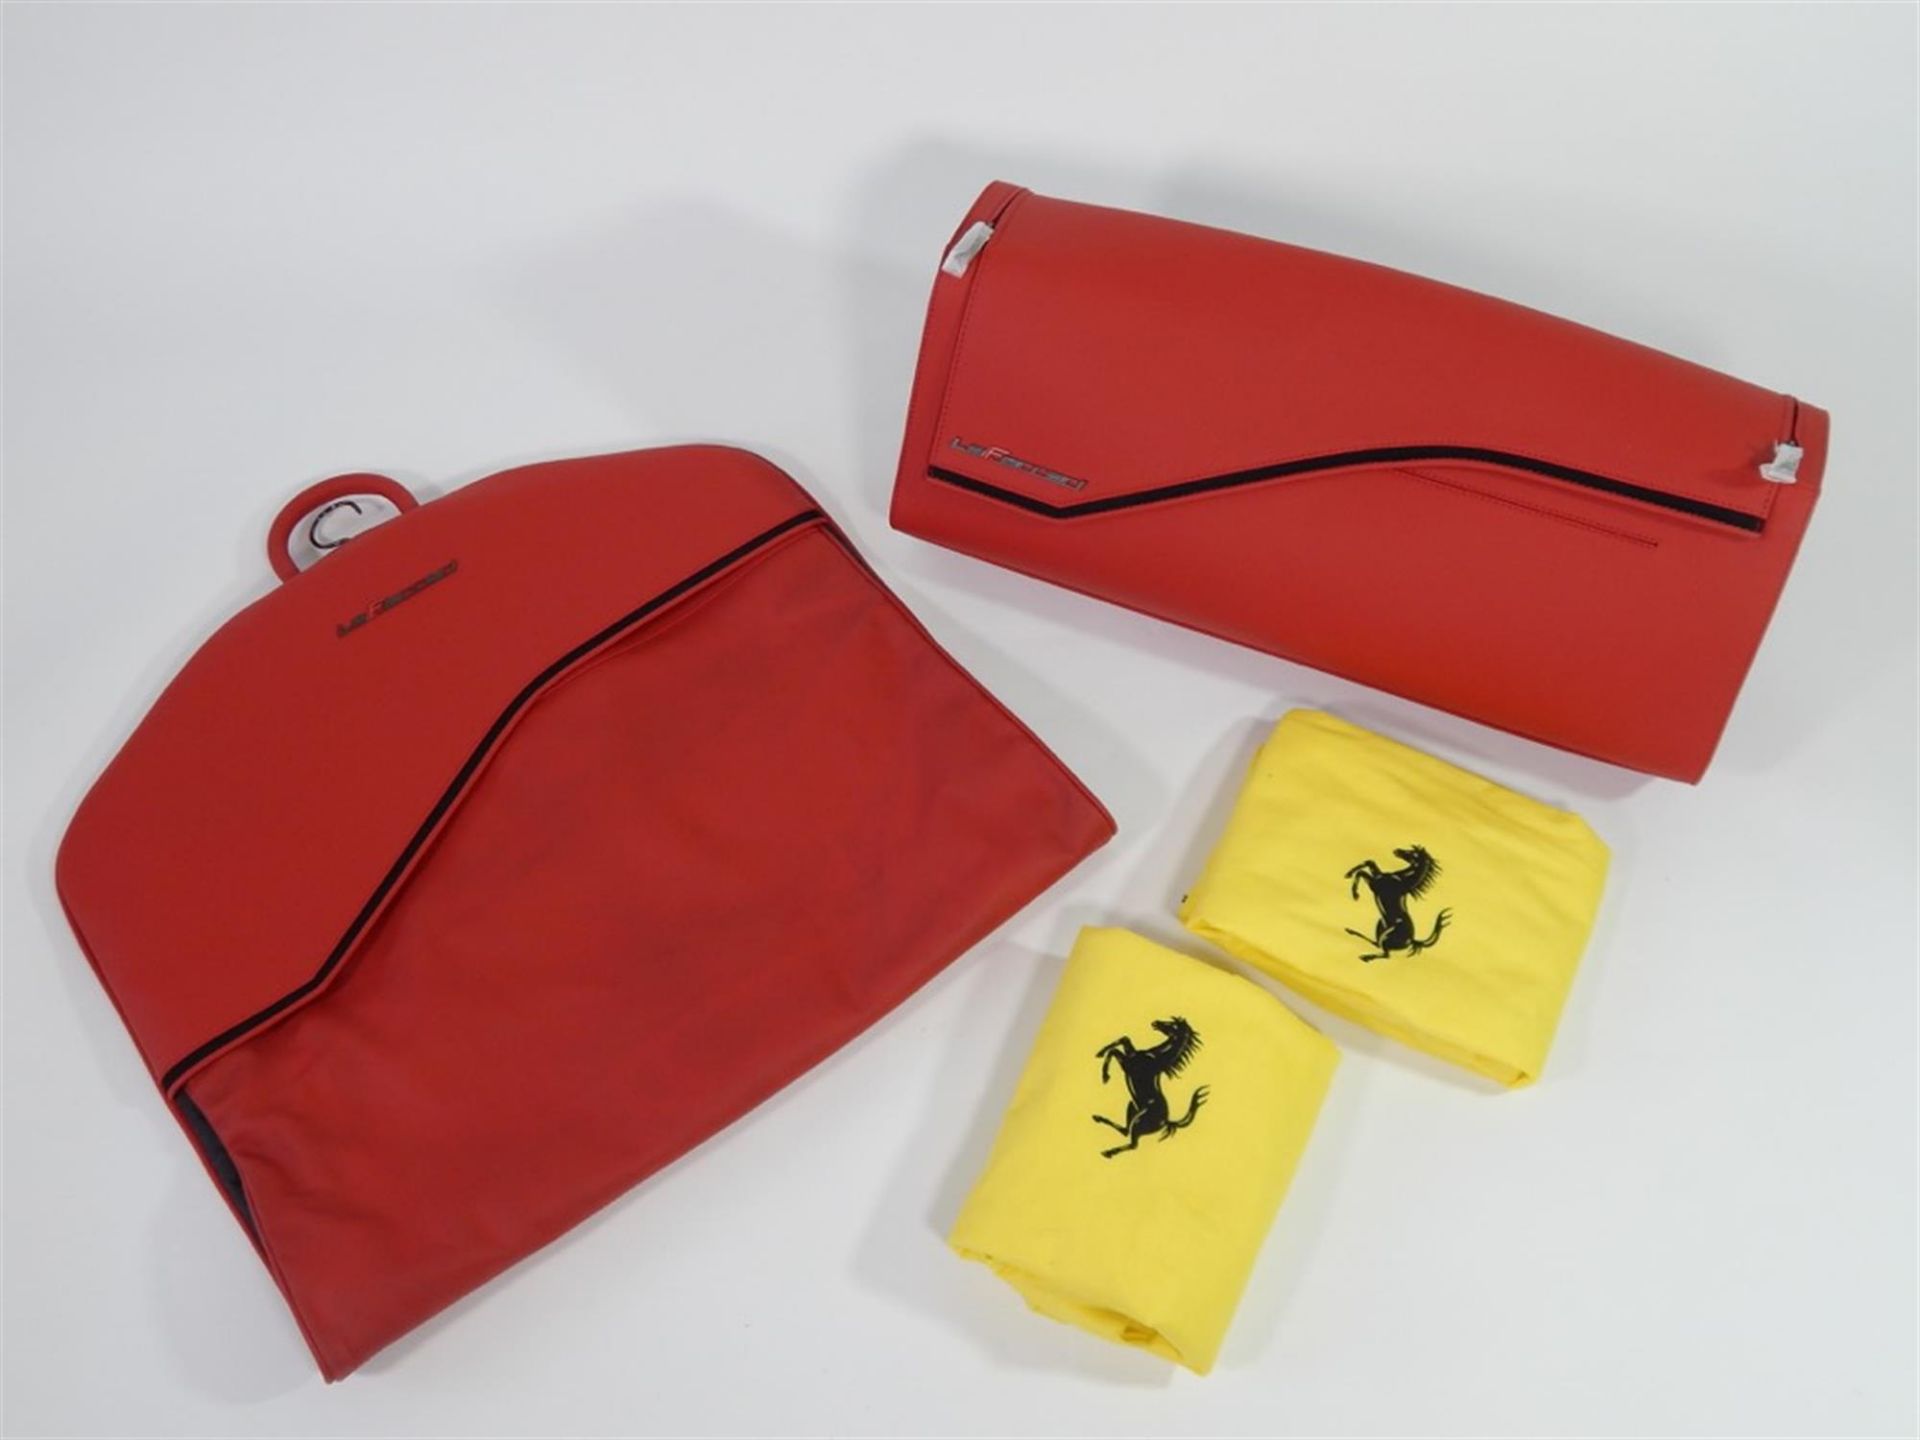 2013 - 2016 Ferrari LaFerrari 2 Piece Complete Schedoni Luggage Set